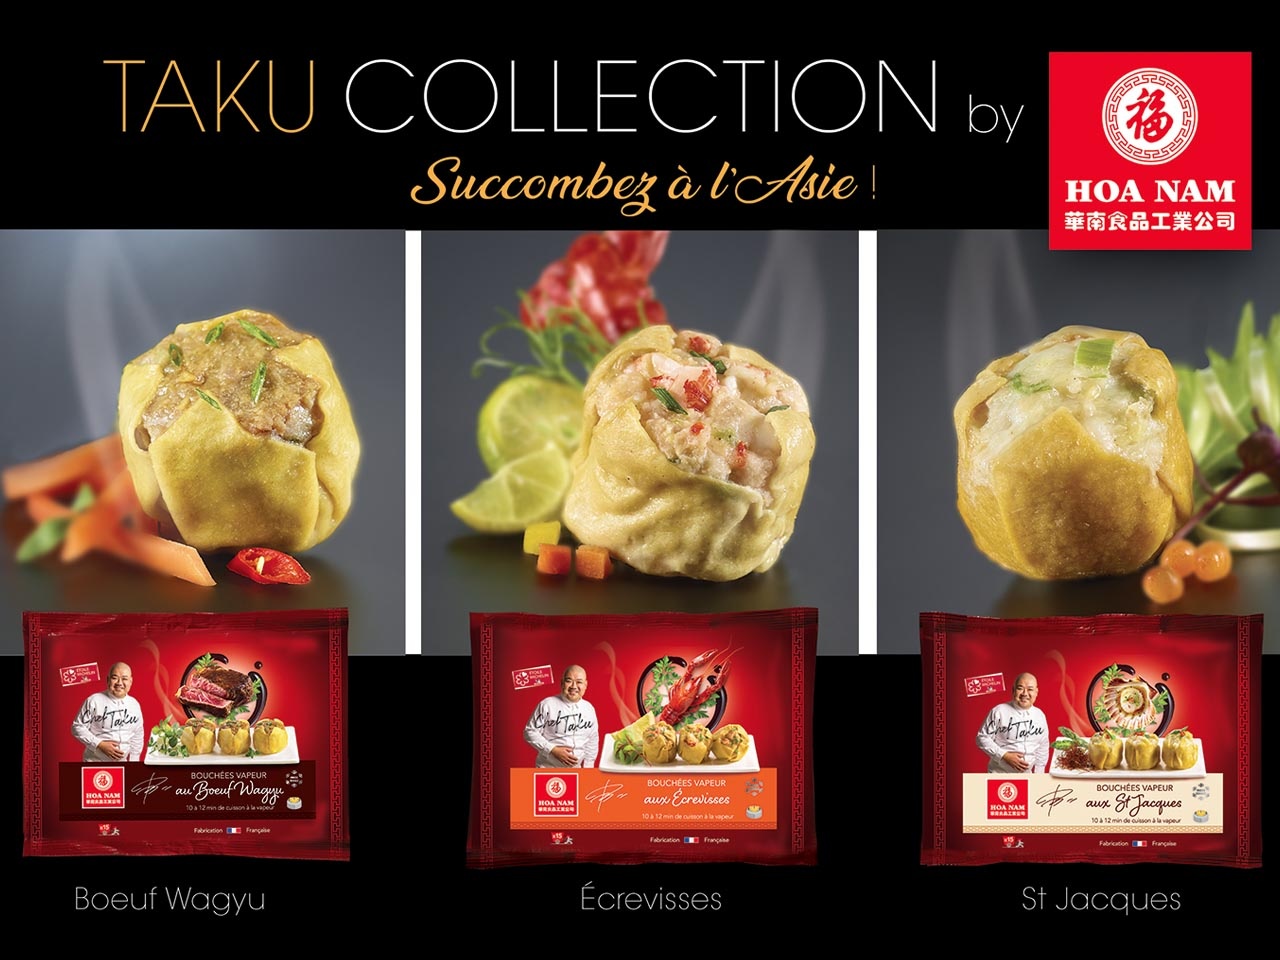 Hoa Nam : Une gamme premium élaborée par le Chef Taku pour le Nouvel An chinois